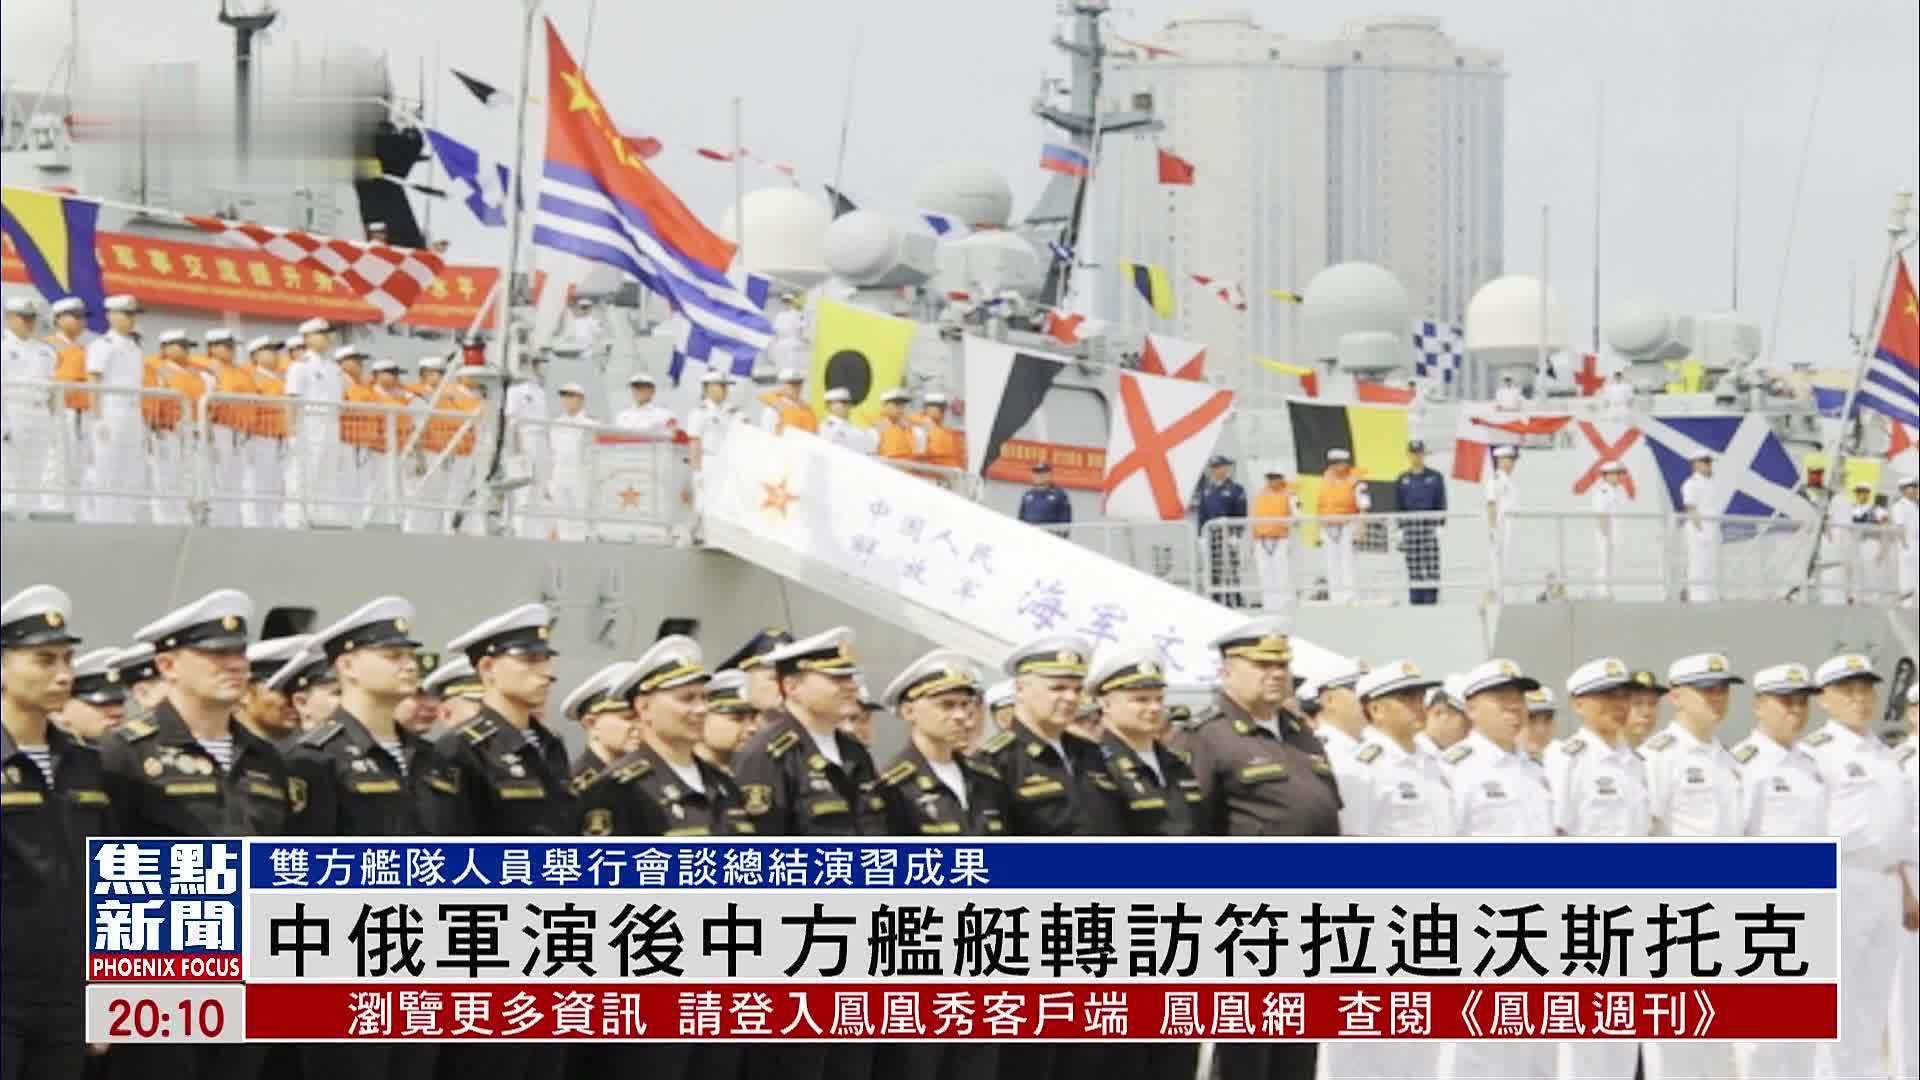 中国、俄罗斯和伊朗将举行联合海上军演，敏感时刻、全球关注 - 知乎